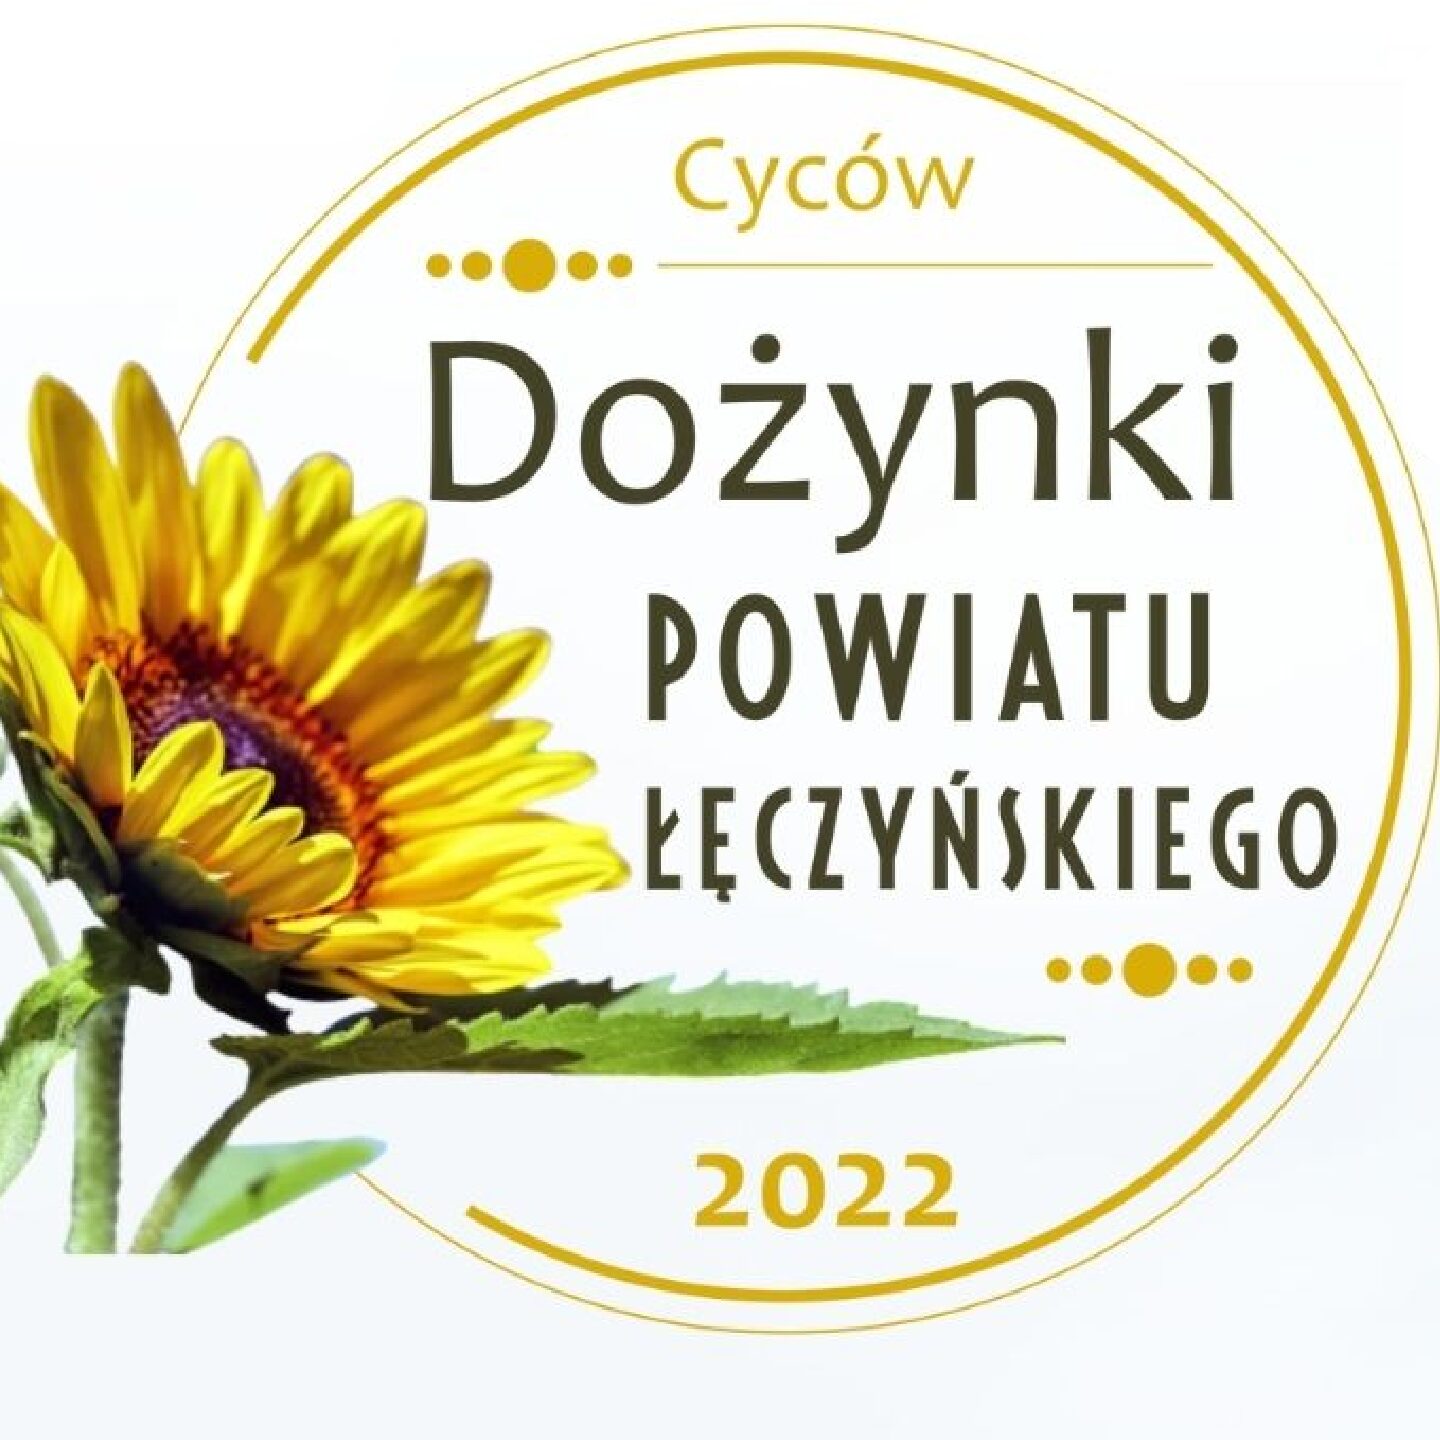 Dożynki Powiatowe Cyców 2022